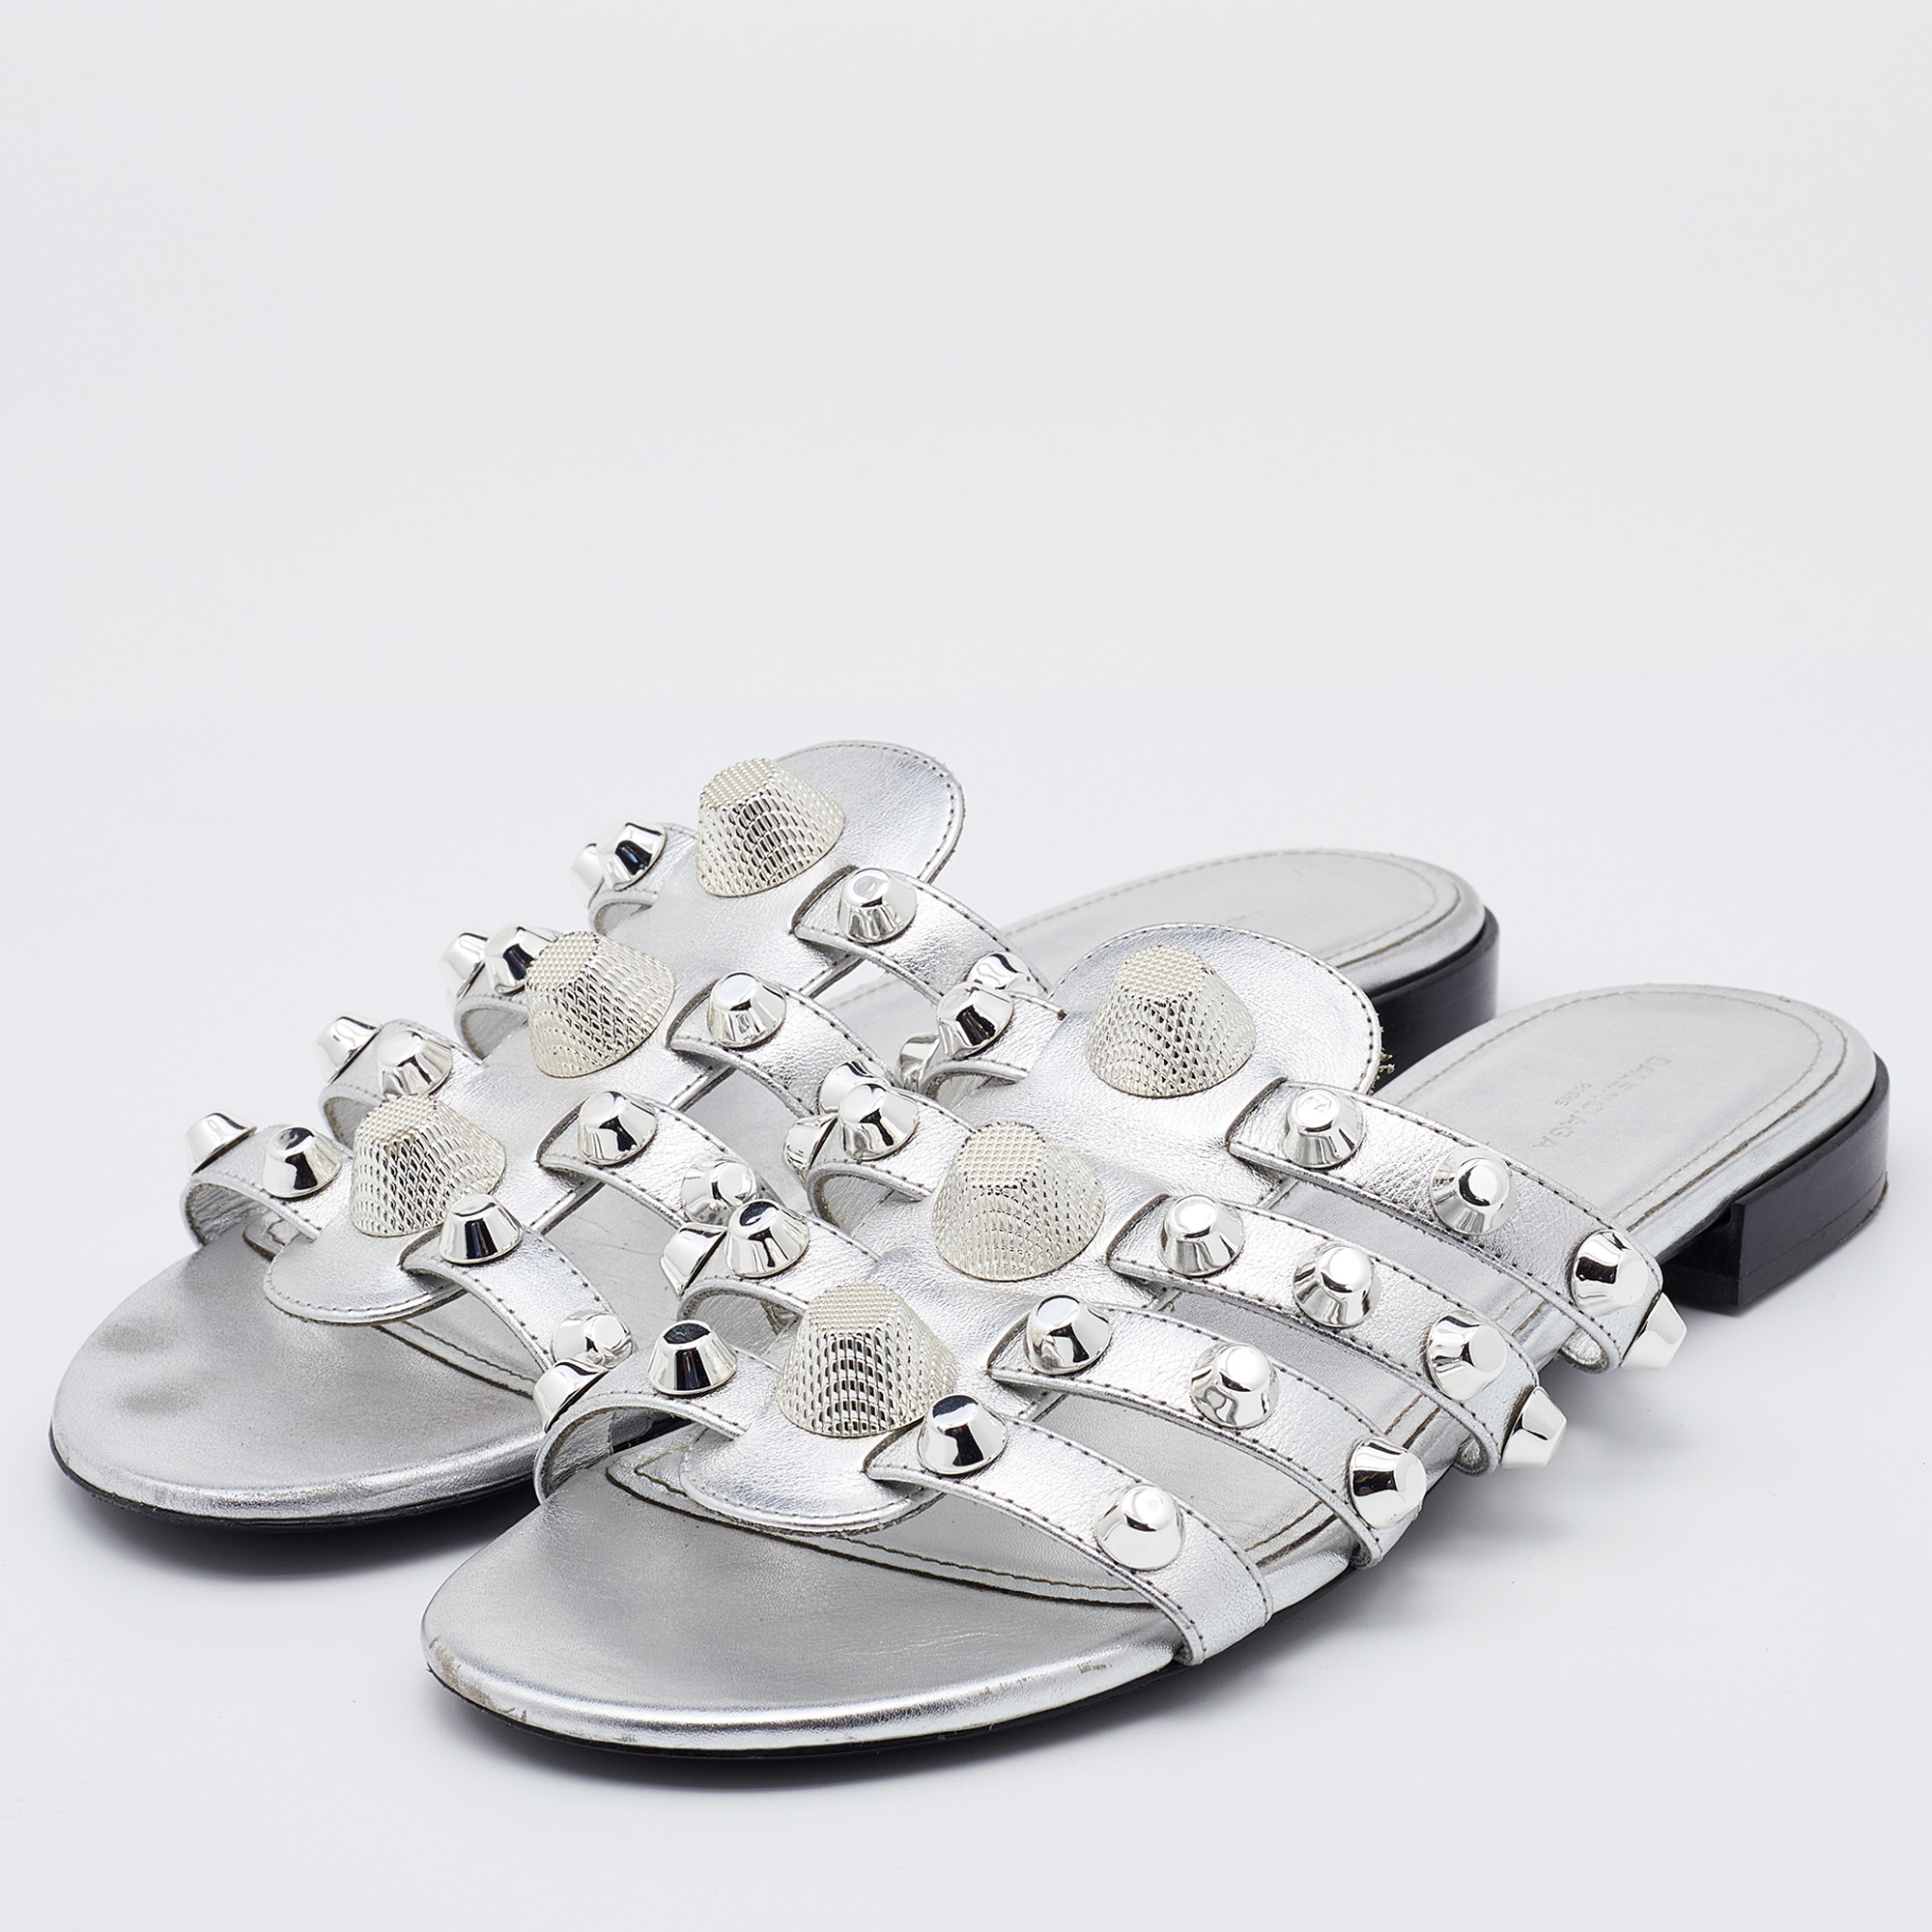 

Balenciaga Metallic Silver Leather Arena Giant Slide Flat Sandals Size